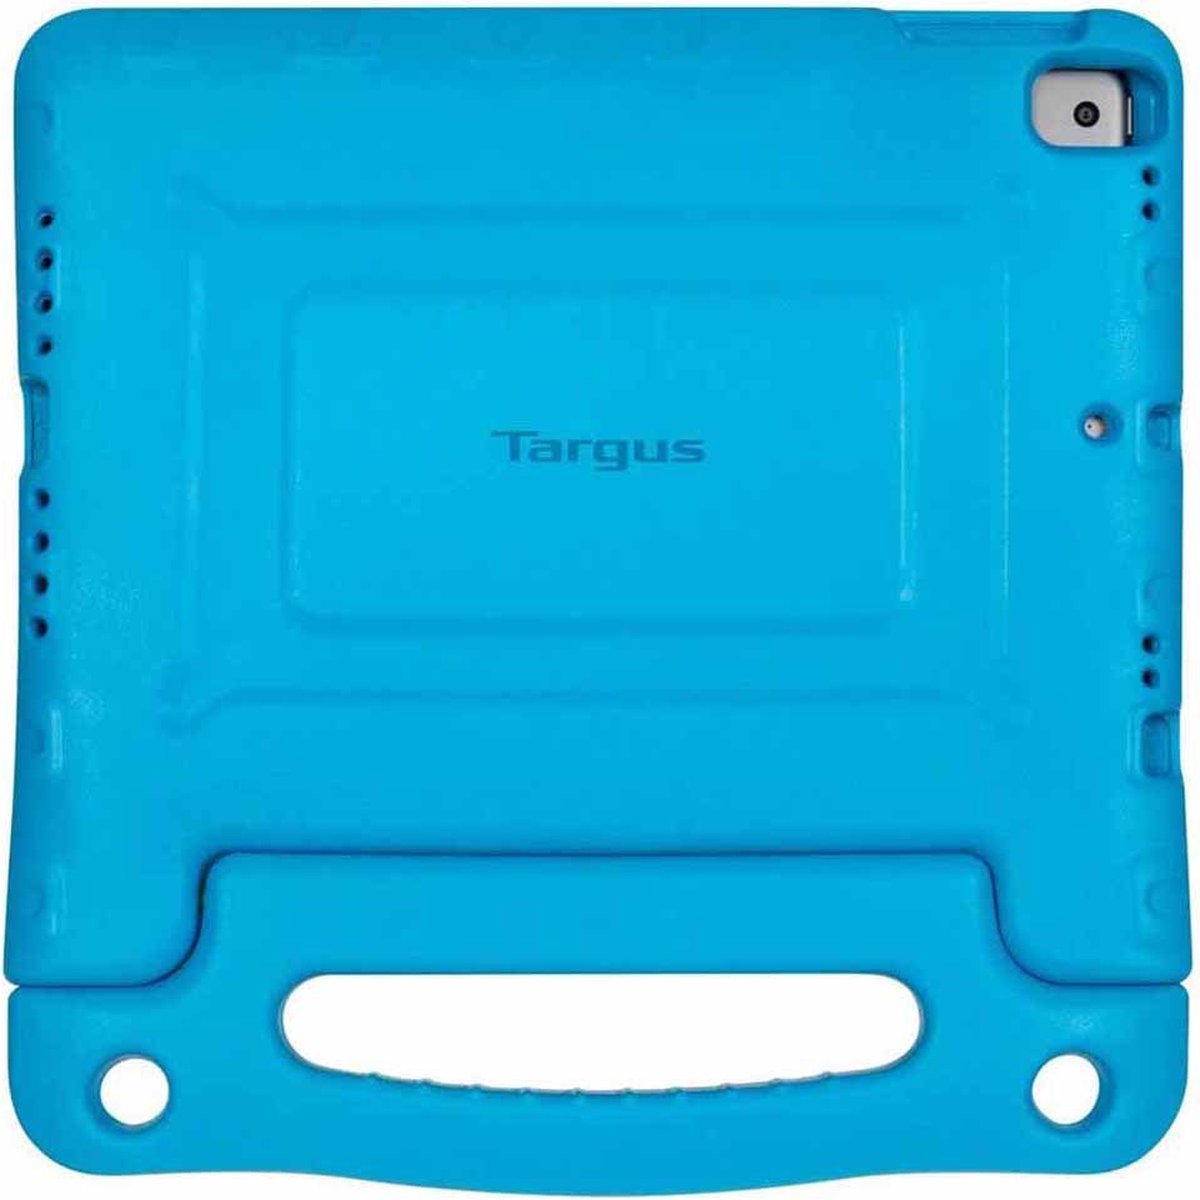 Targus beschermhoes Kids Cover iPad (Blauw)